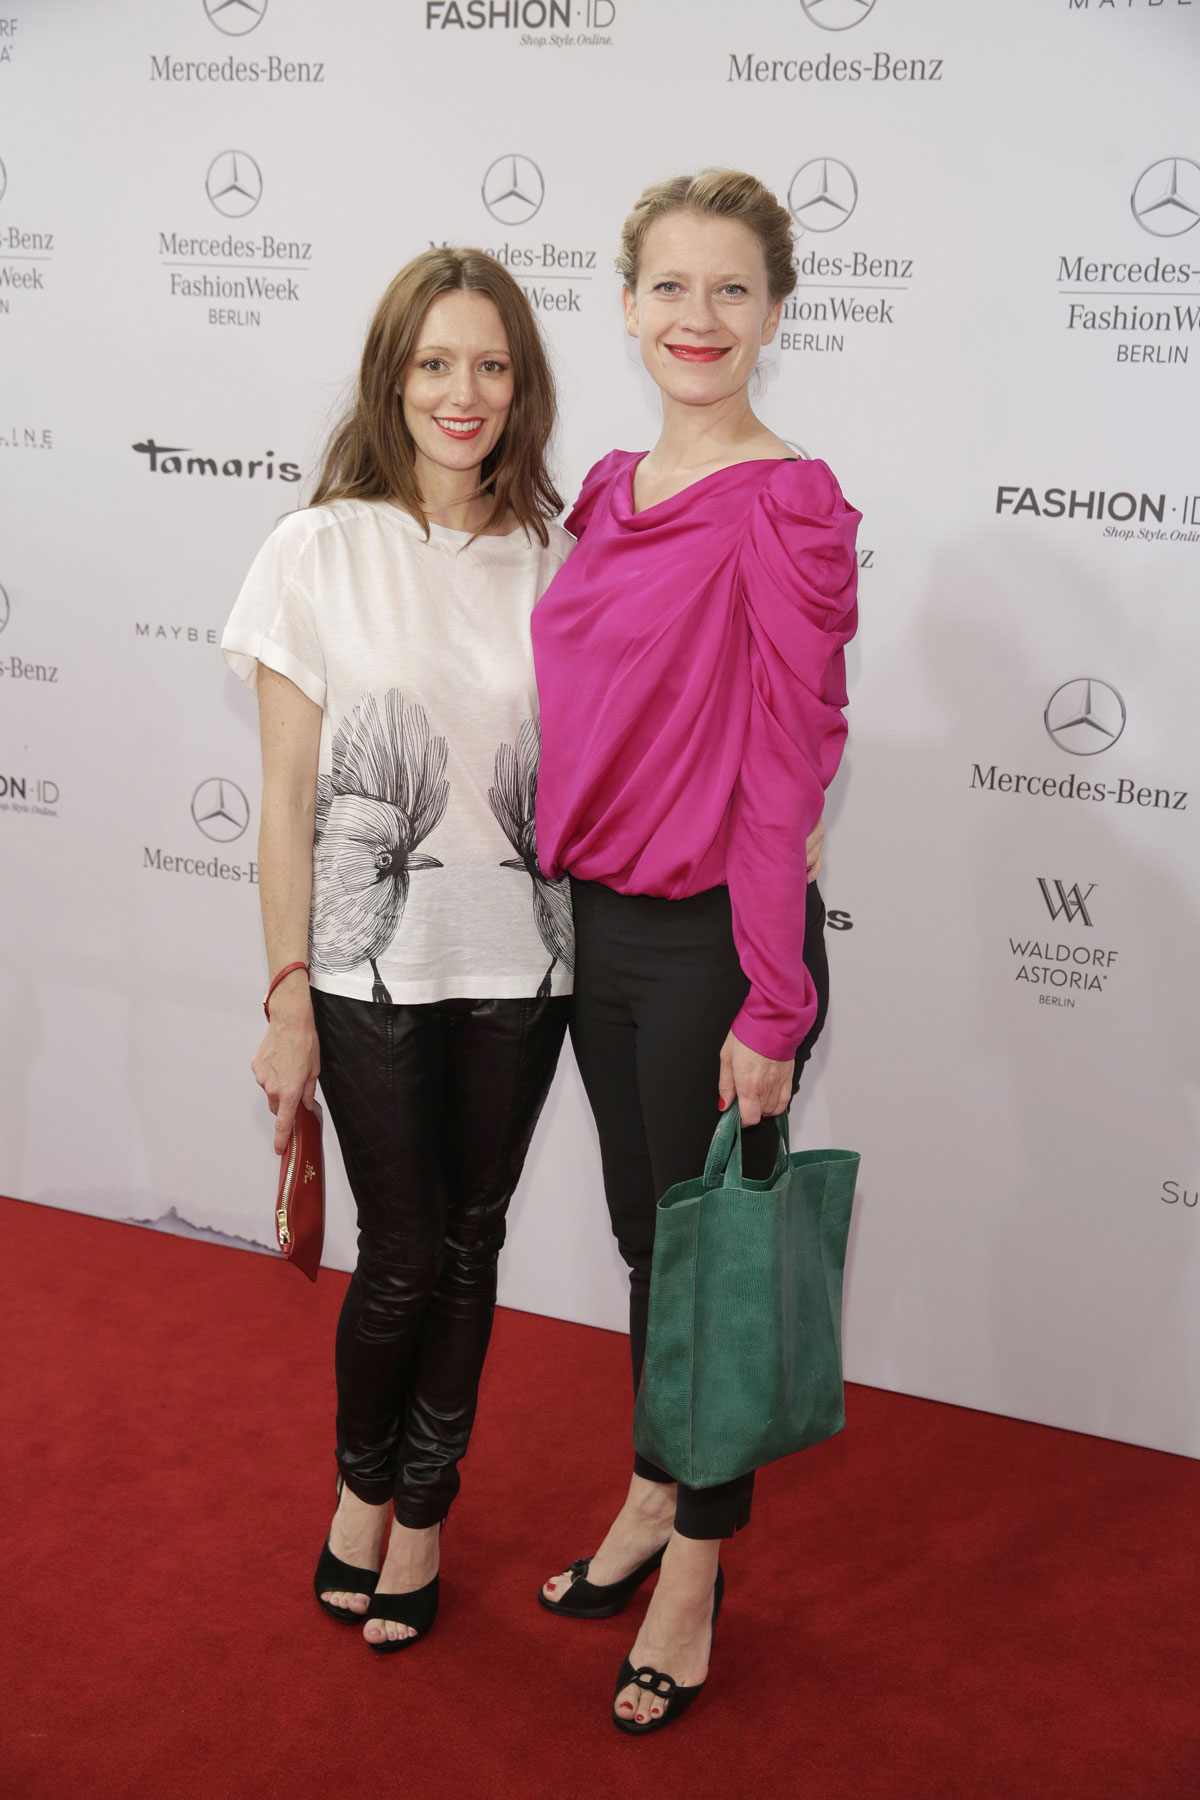 German celebs attend Mercedes-Benz Fashion Week Spring Summer 2015